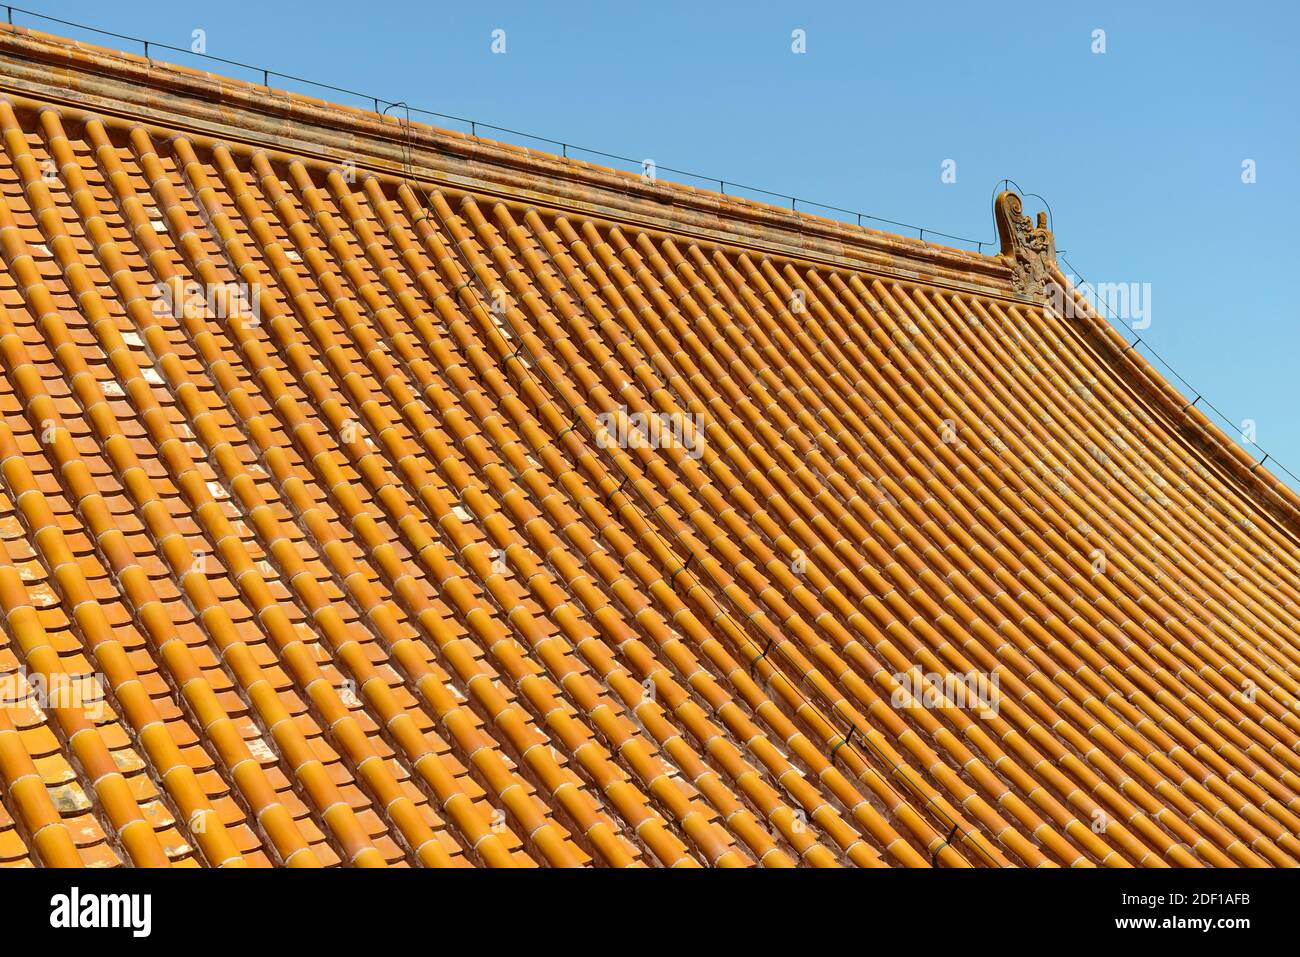 Detalle de un techo de azulejos bien conservado en un edificio del complejo Summer Palace en Beijing, China Foto de stock